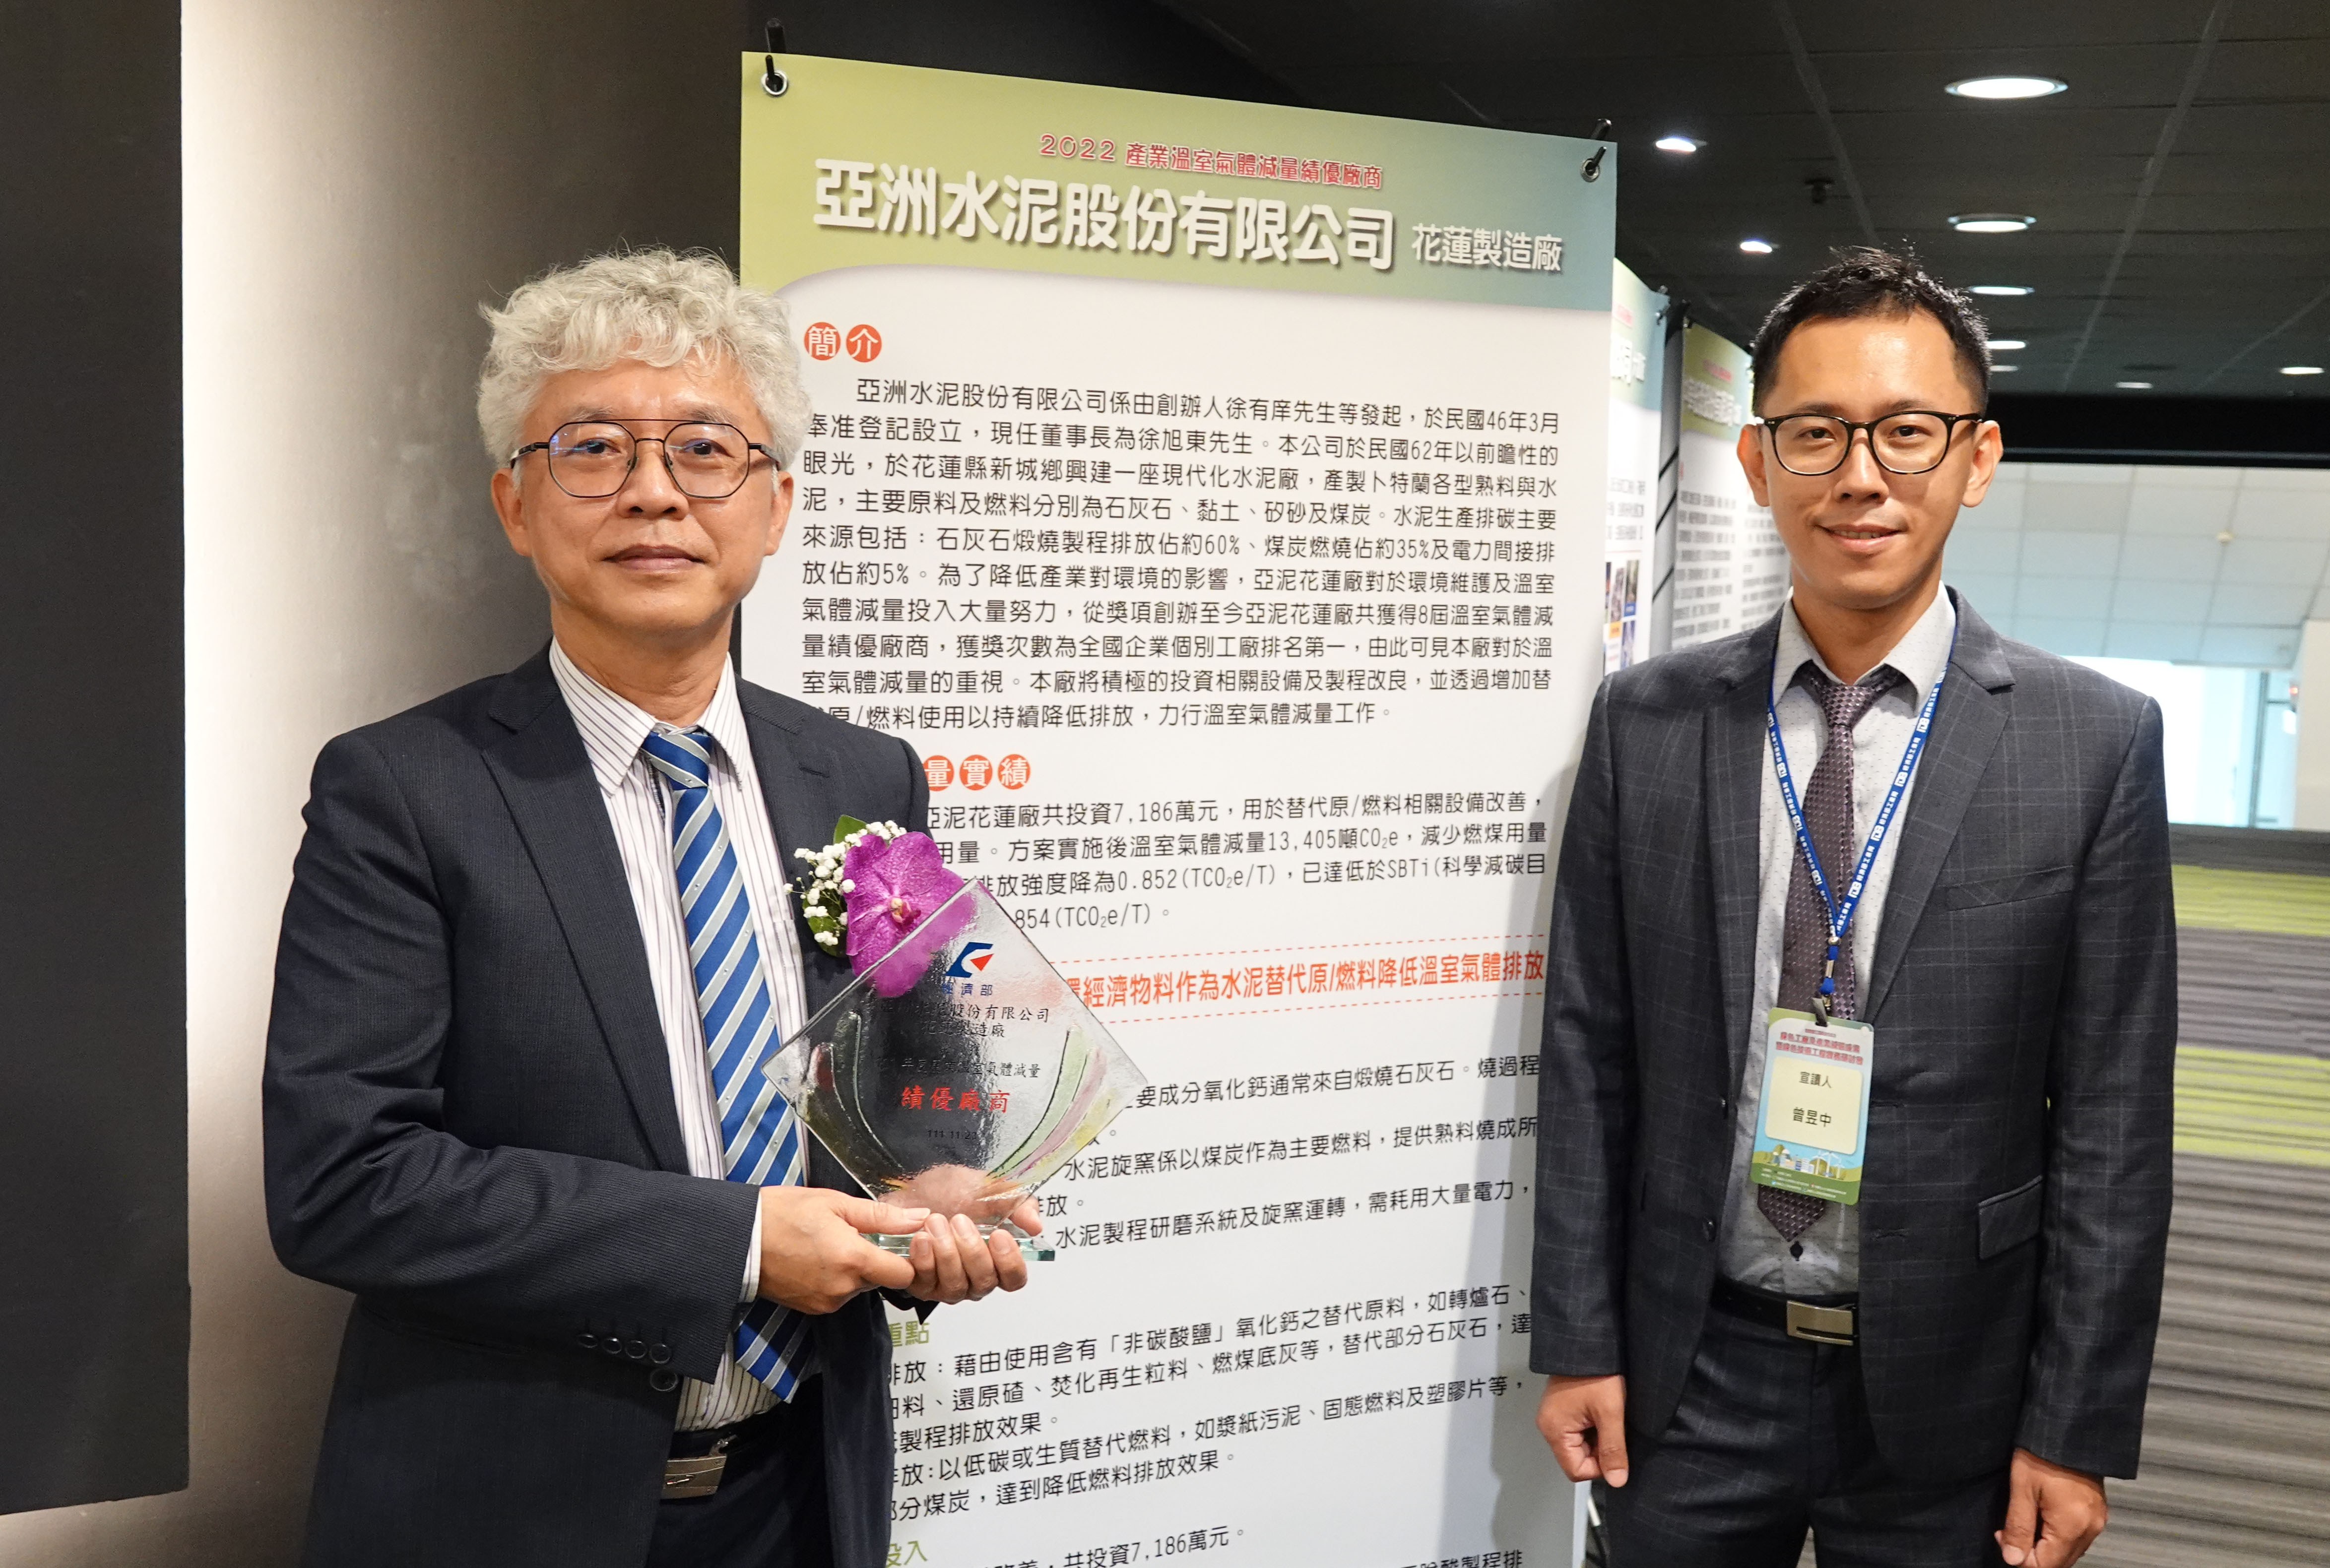 亞洲水泥花蓮廠第八度獲得溫室氣體自願減量績優廠商殊榮為全國得獎次數最多的工廠